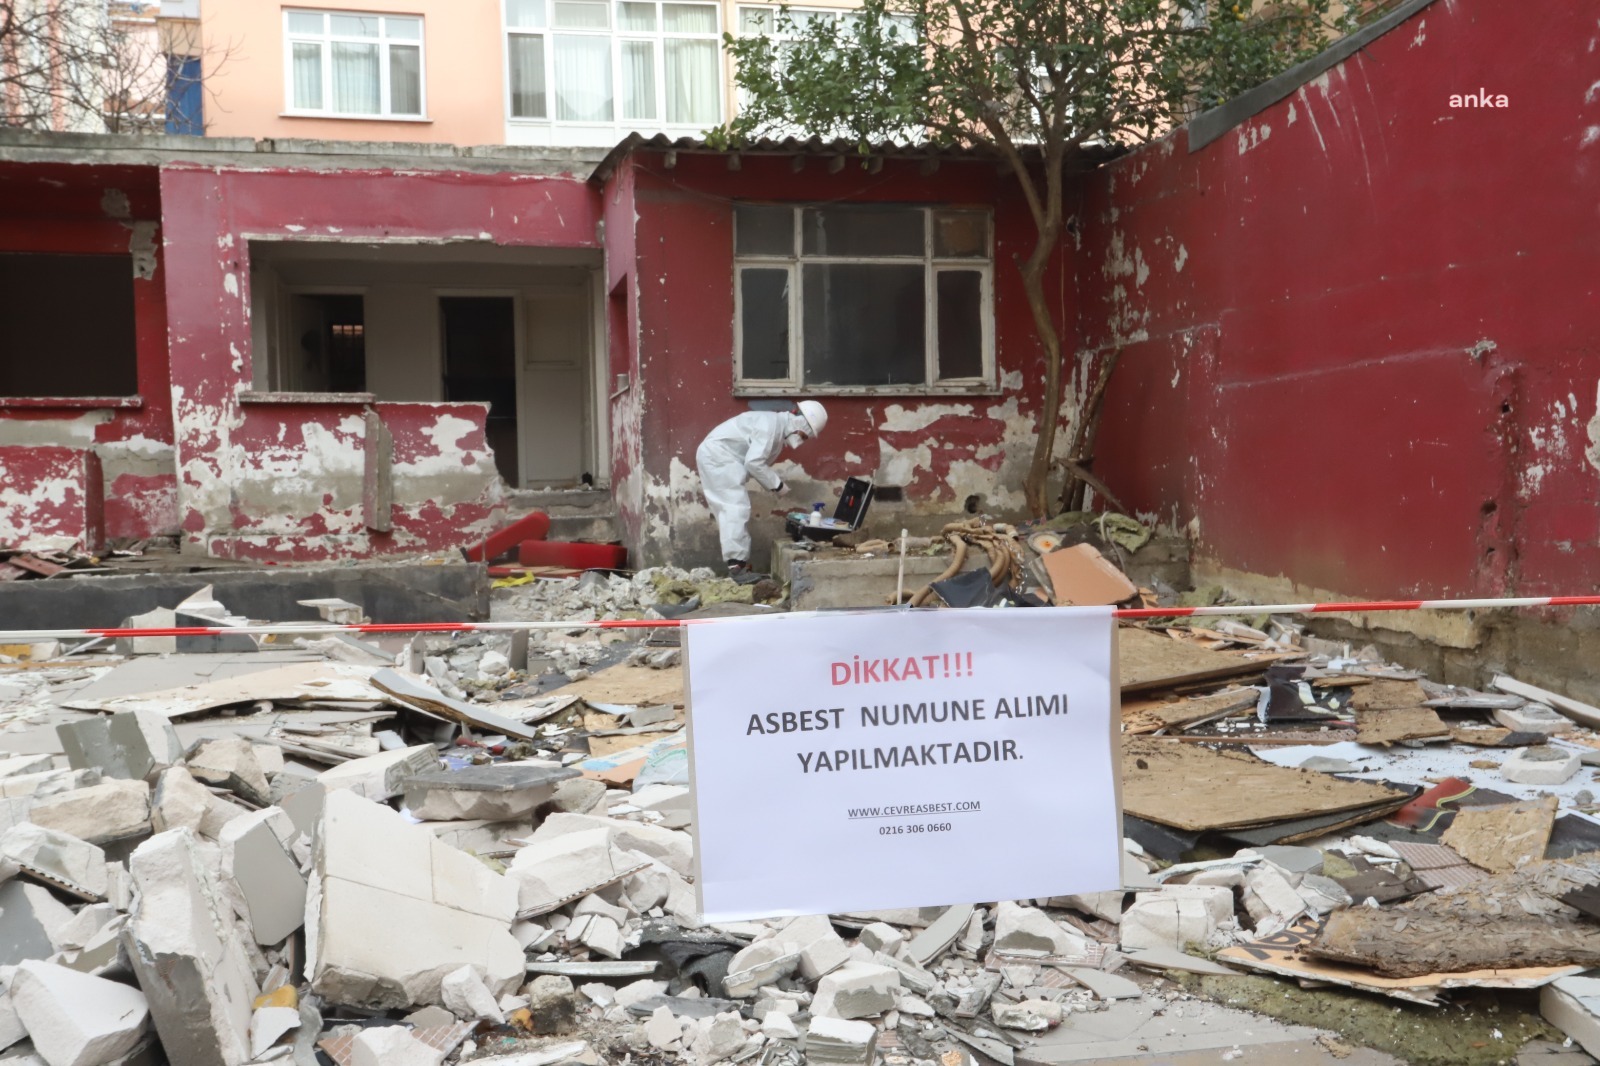 Kartal'da yıkım kararı alınan evlerde asbest denetimi